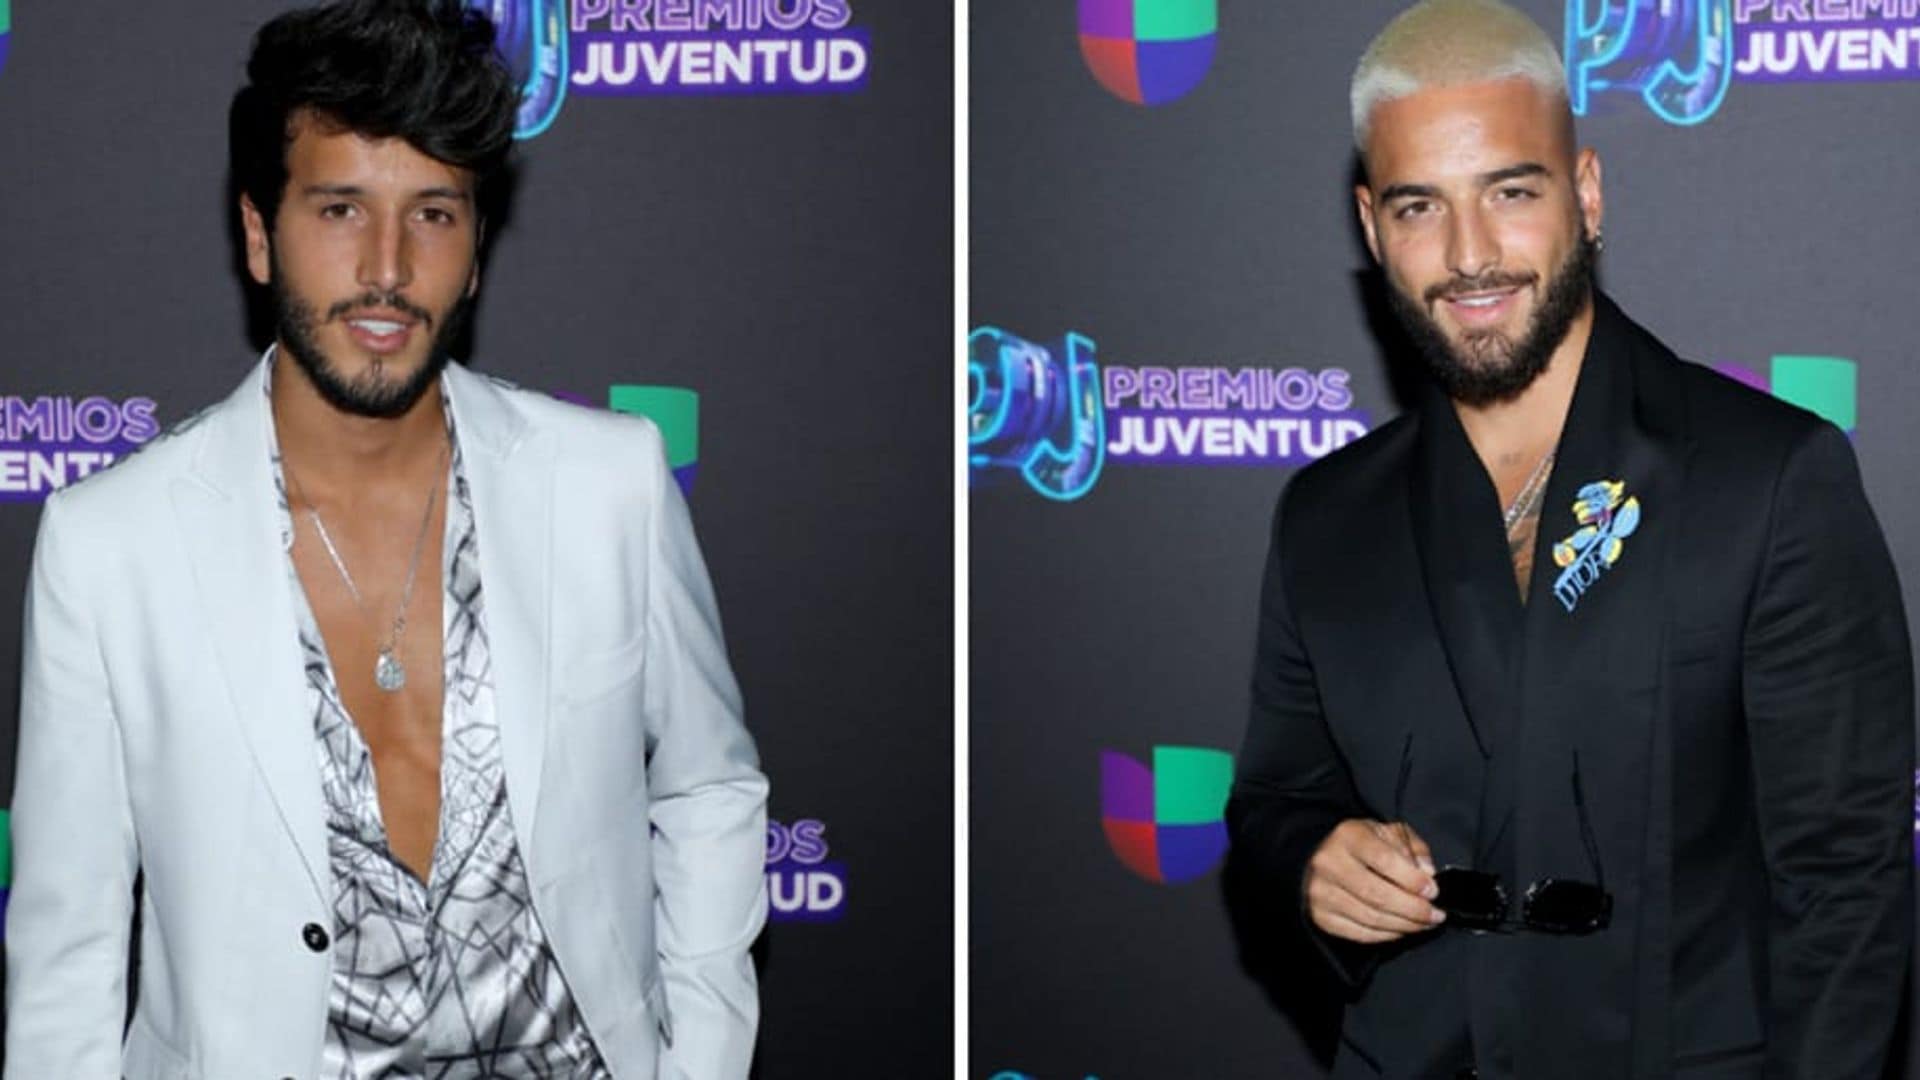 Maluma and Sebastian Yatra Premios Juventud